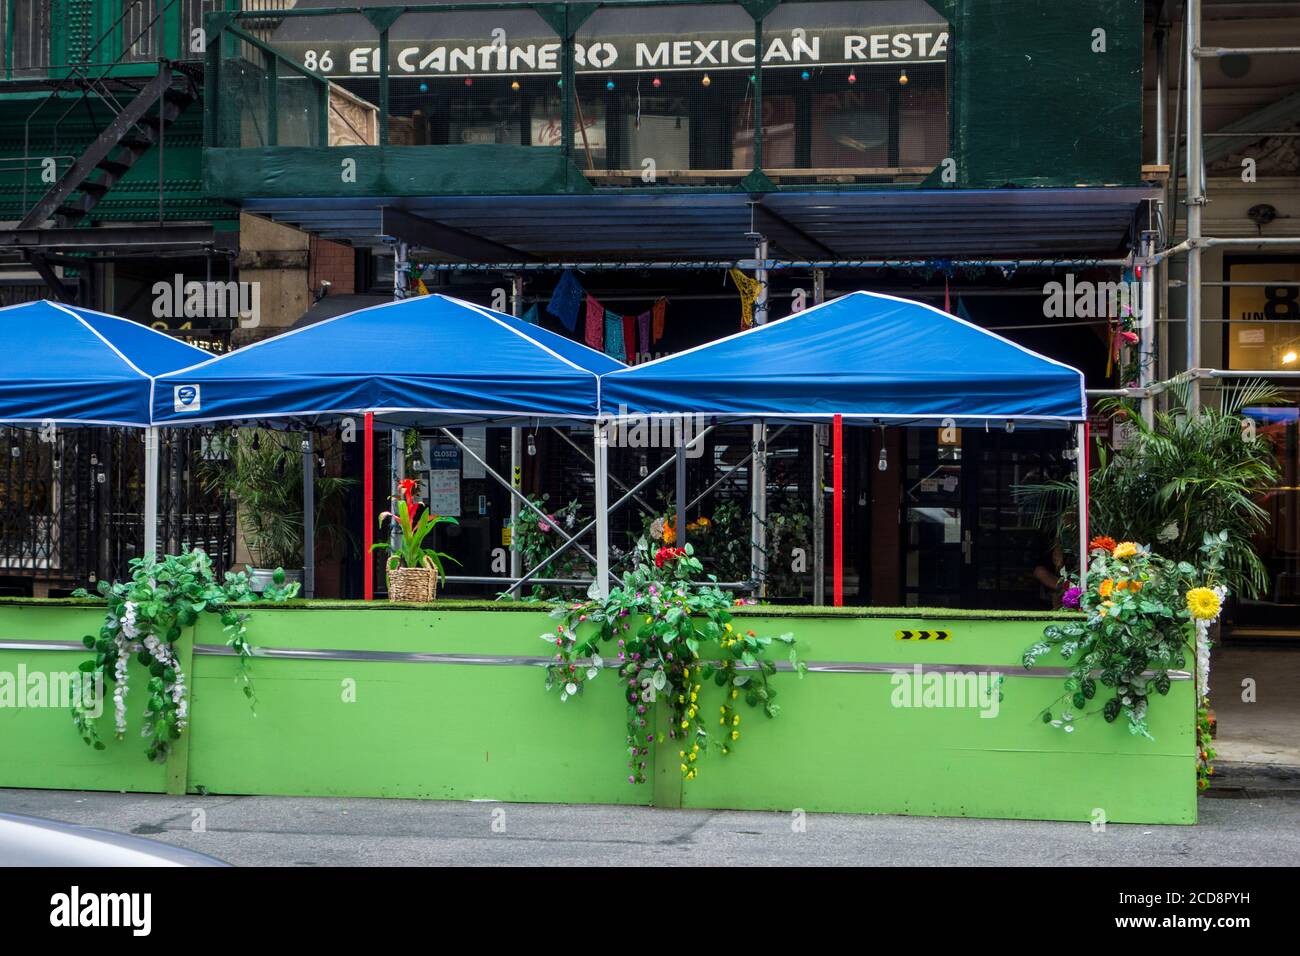 Places assises à l'extérieur pendant la pandémie Covid 19 au restaurant mexicain El Cantinero sur University place, Greenwich Village, New York City, NY, États-Unis Banque D'Images